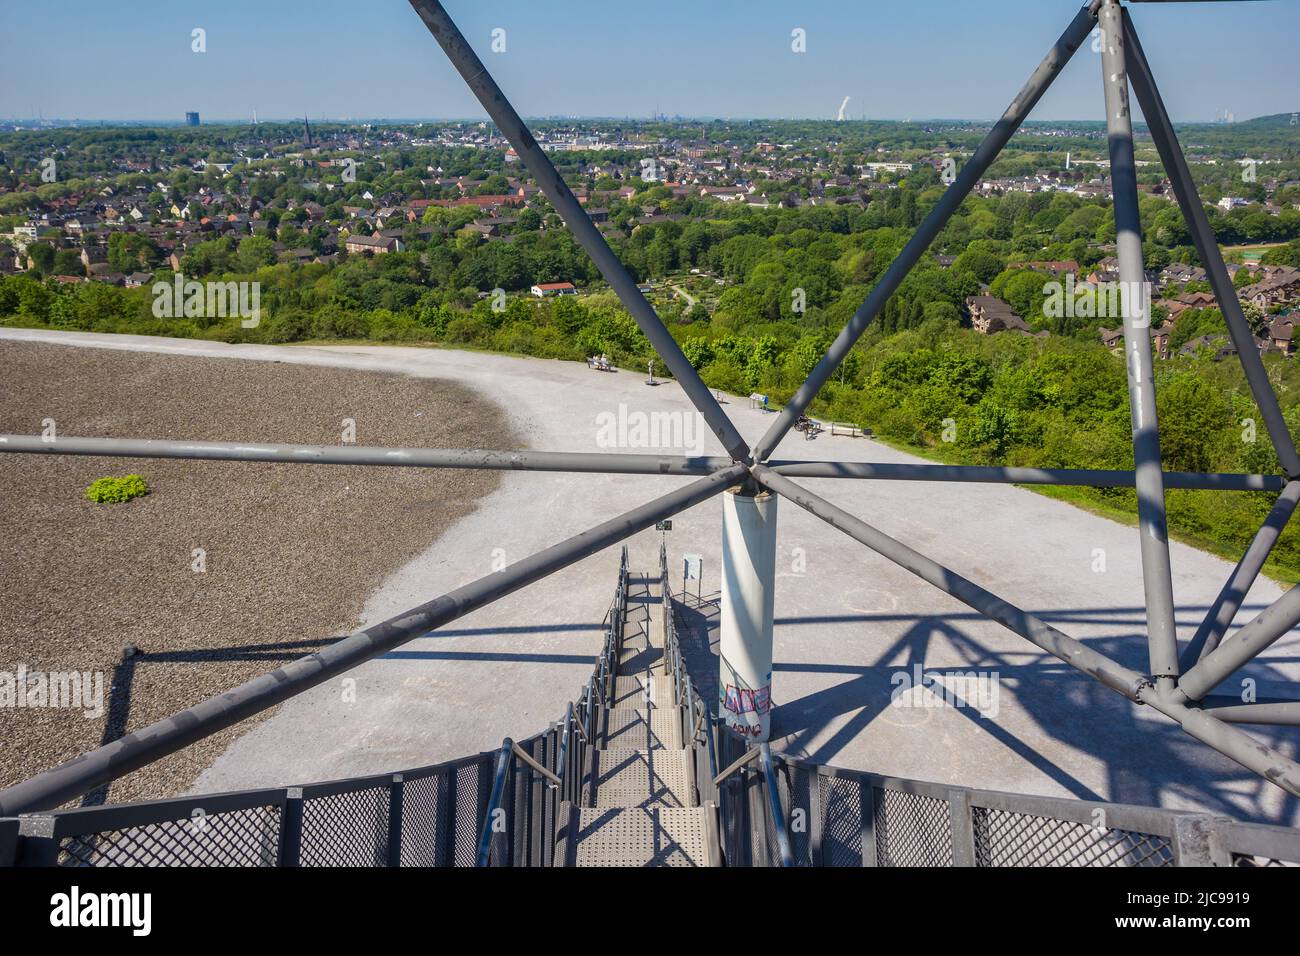 Treppe des Tetraeders mit Blick auf die Landschaft in Bottrop, Deutschland Stockfoto